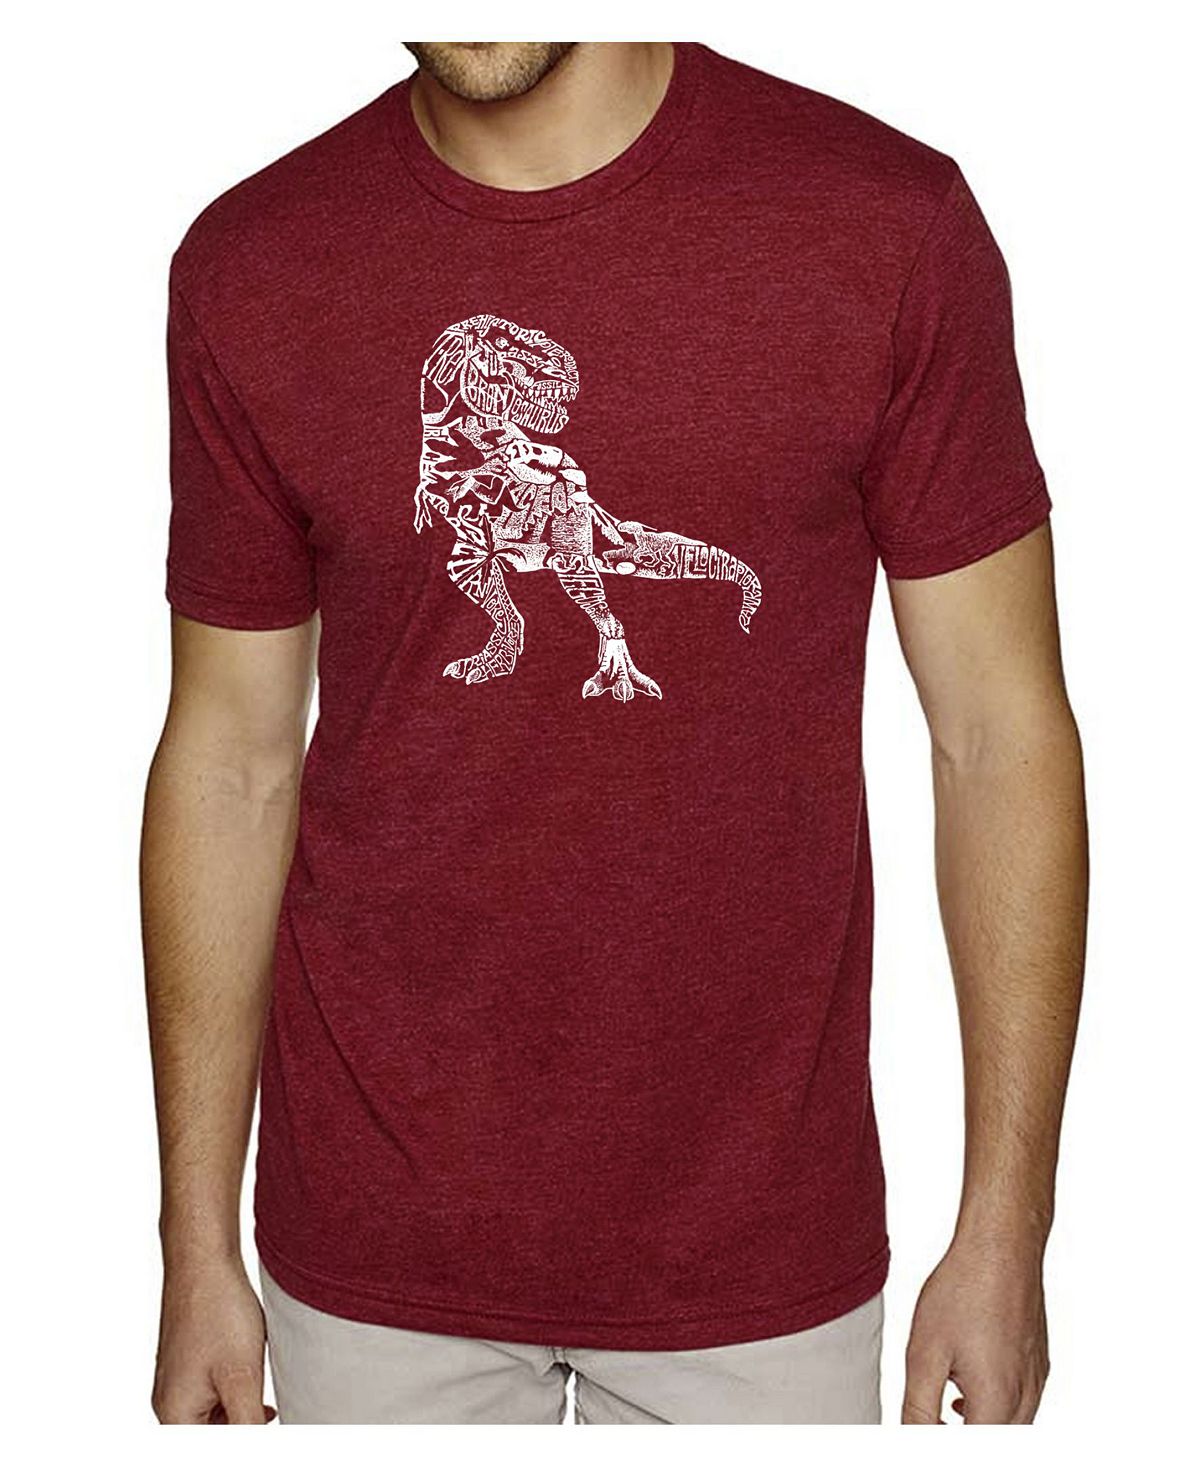 Мужская футболка premium blend word art - динозавр LA Pop Art набор мир юрского периода набор бокалов в огне фигурка t rex